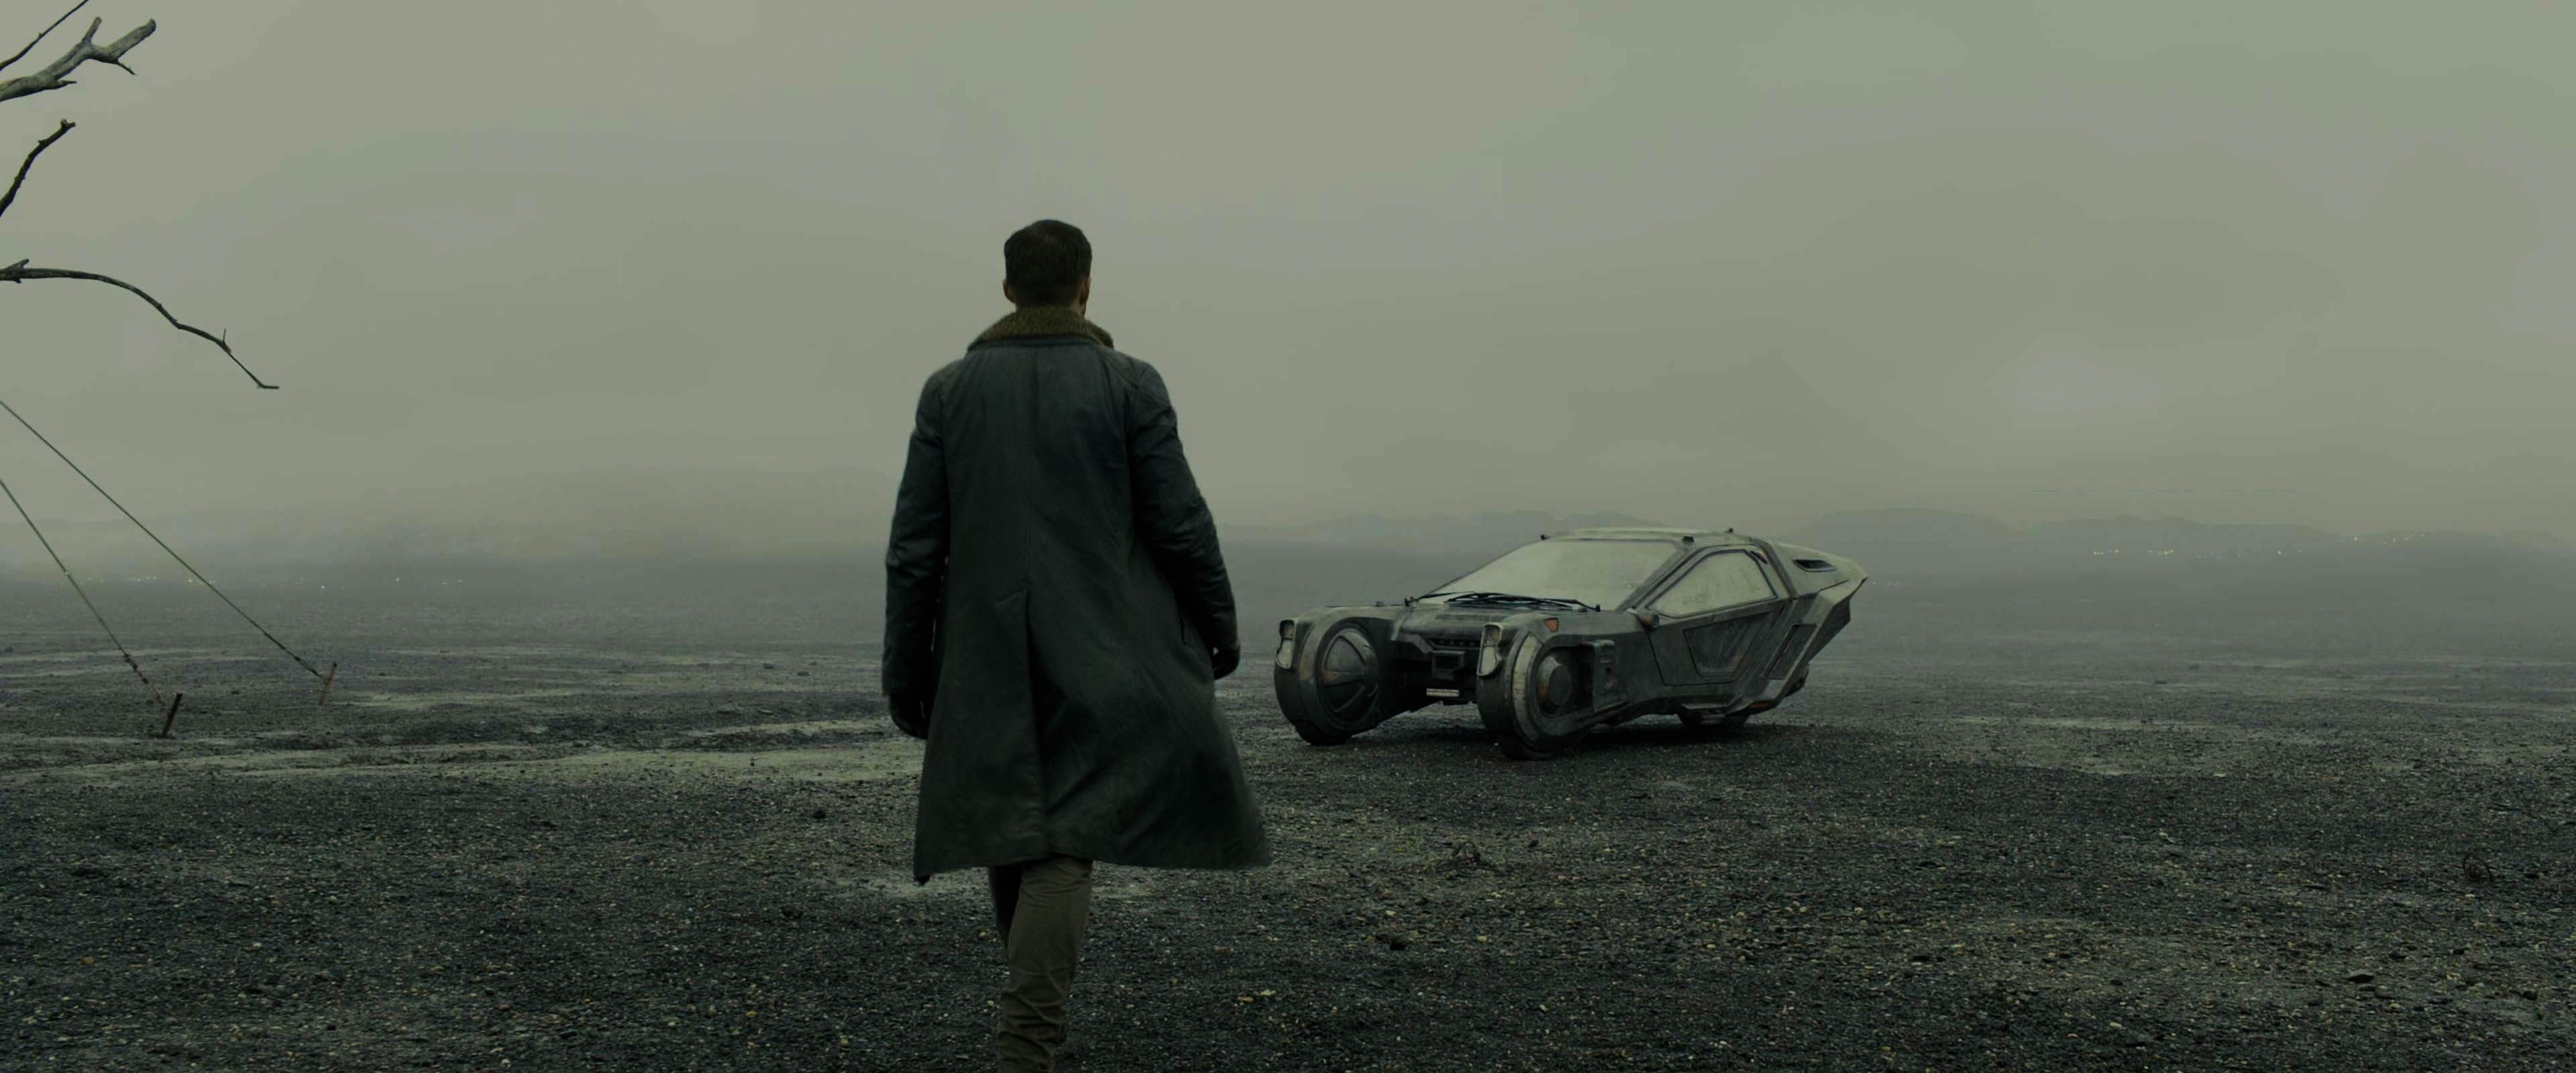 Blade Runner 2049, Screen shots, Frame captures, Blade runner art, 3840x1600 Dual Screen Desktop